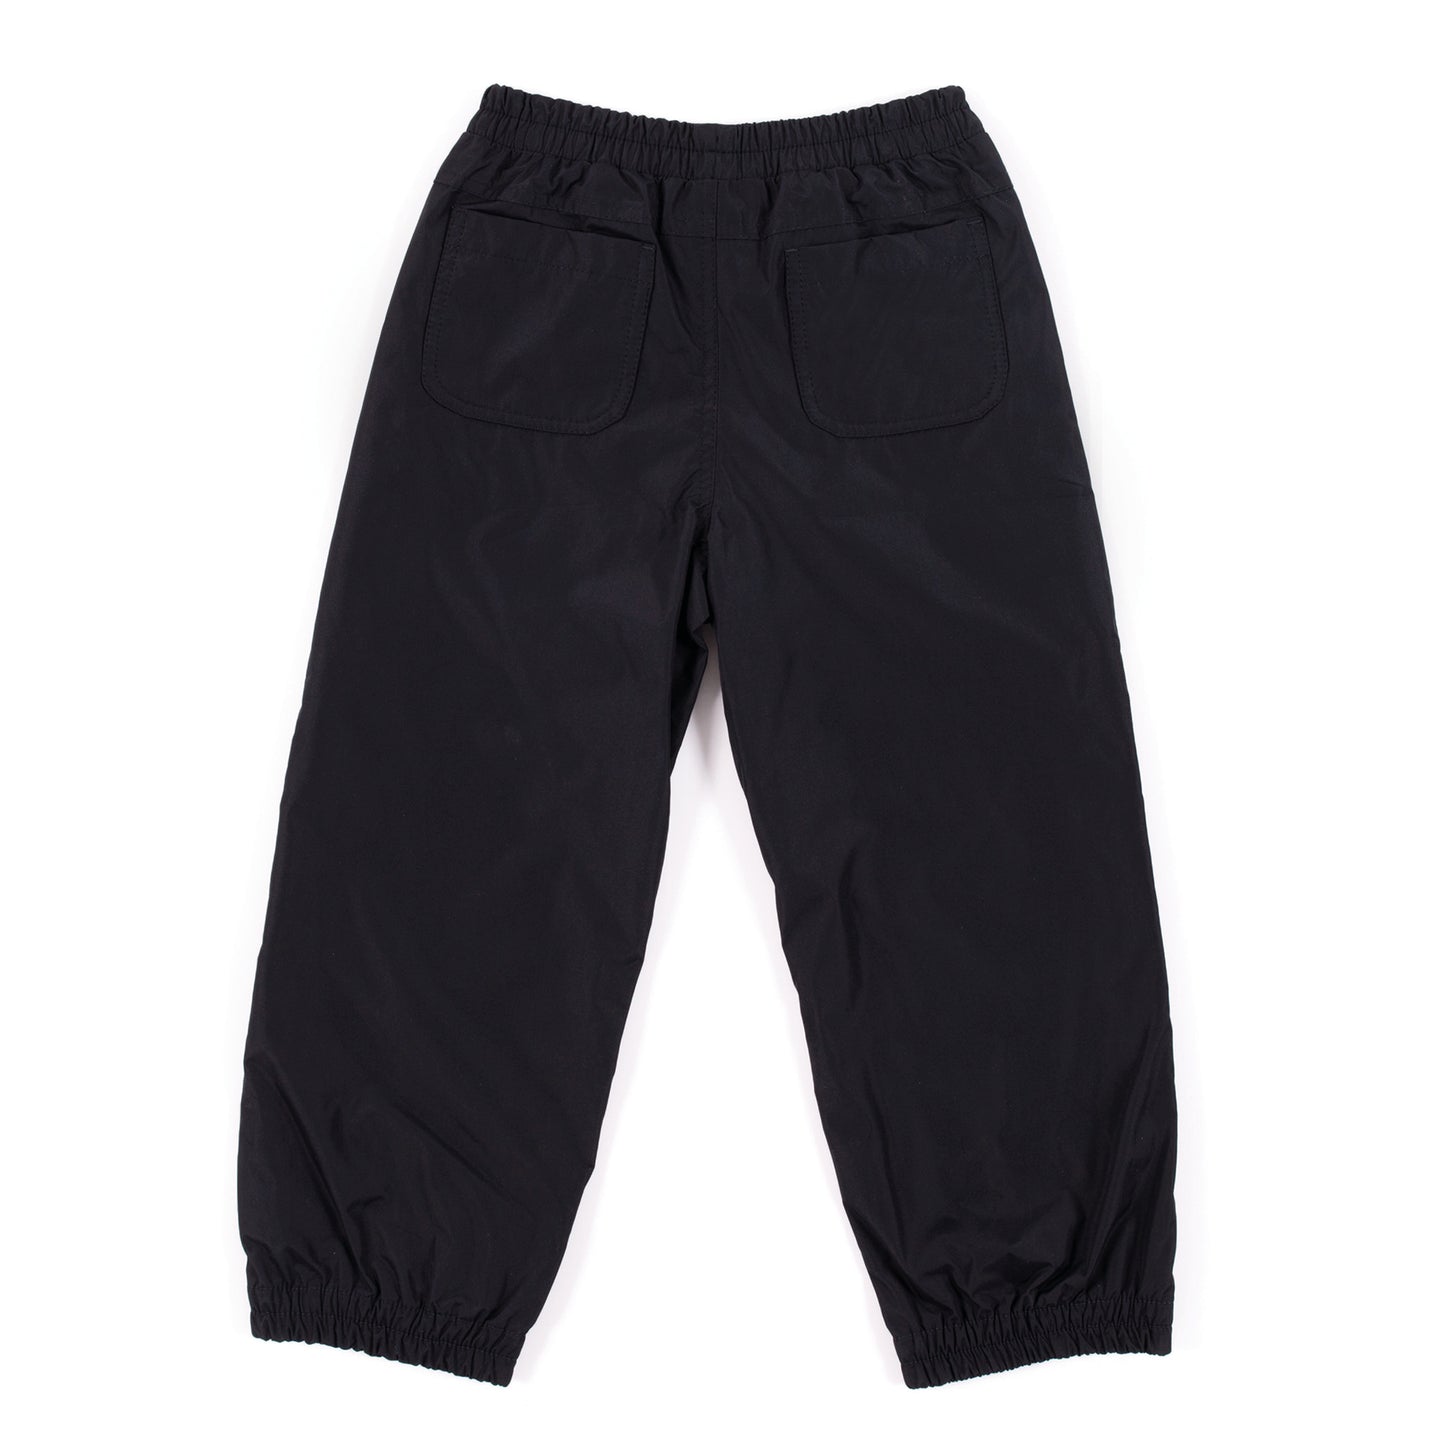 Pantalon de pluie unisexe - Noir -  BSPA200 - 2 à 14 ans